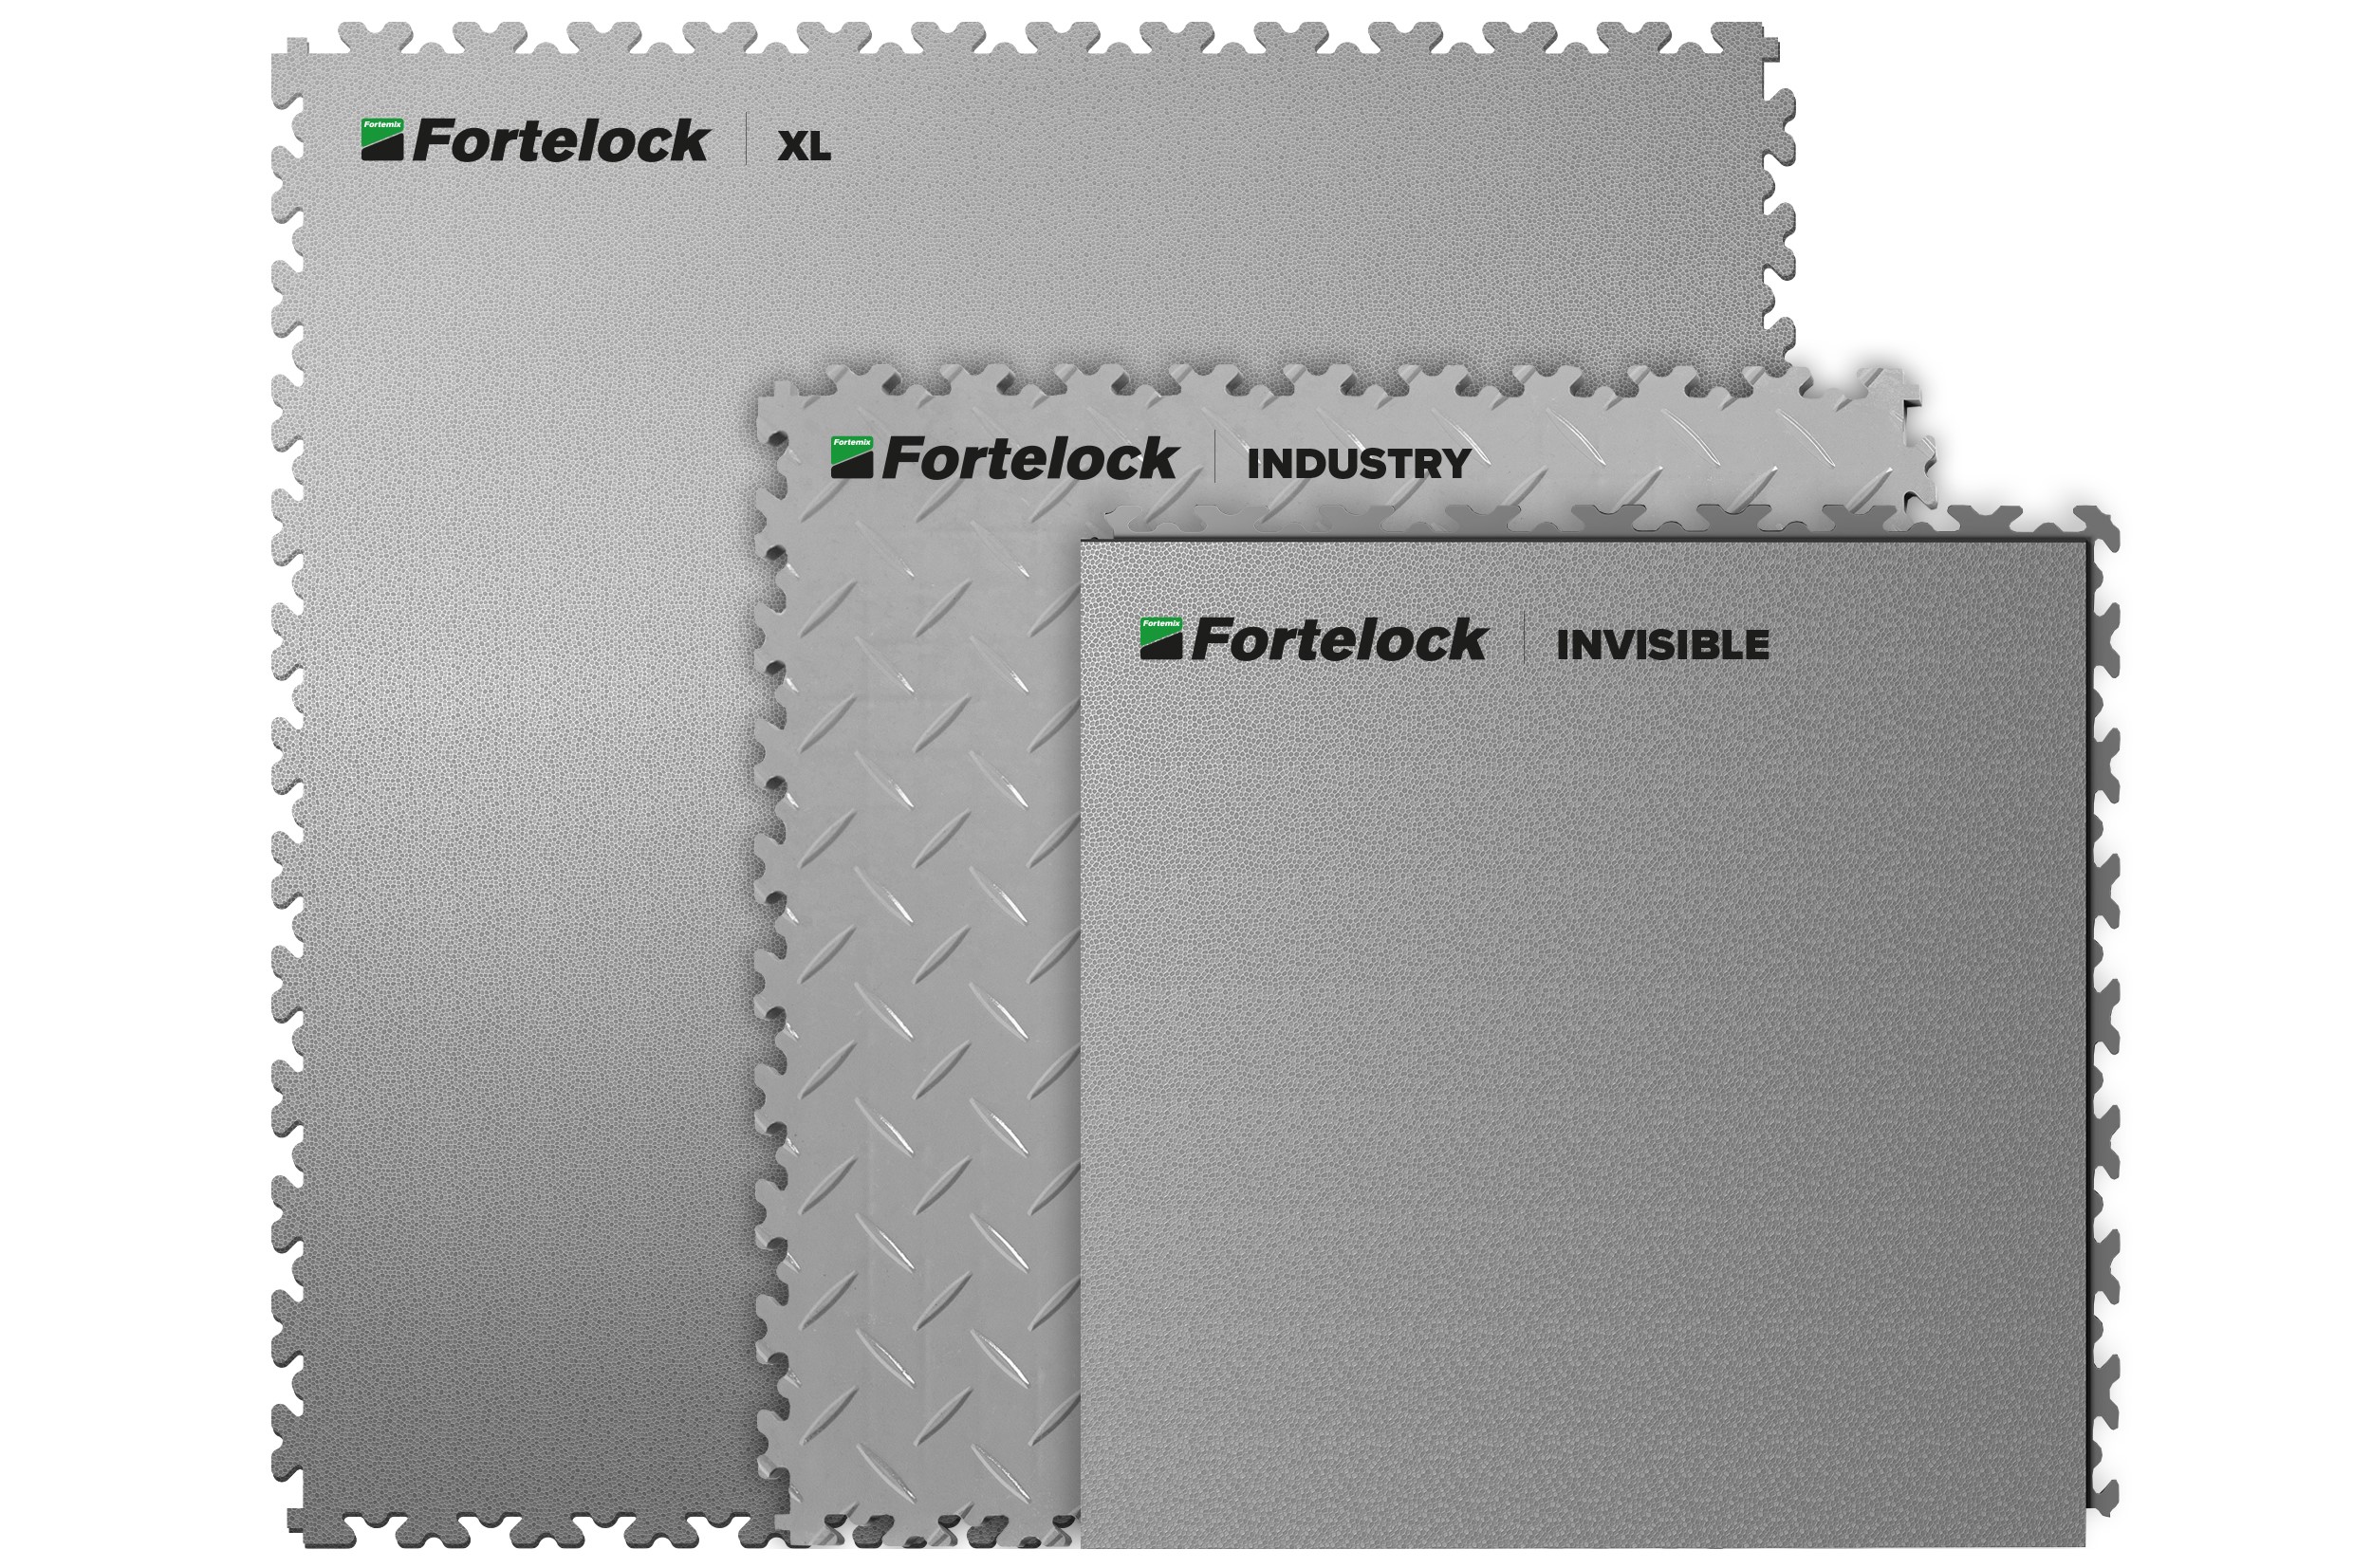 Płytki Fortelock Industry, XL, Invisible